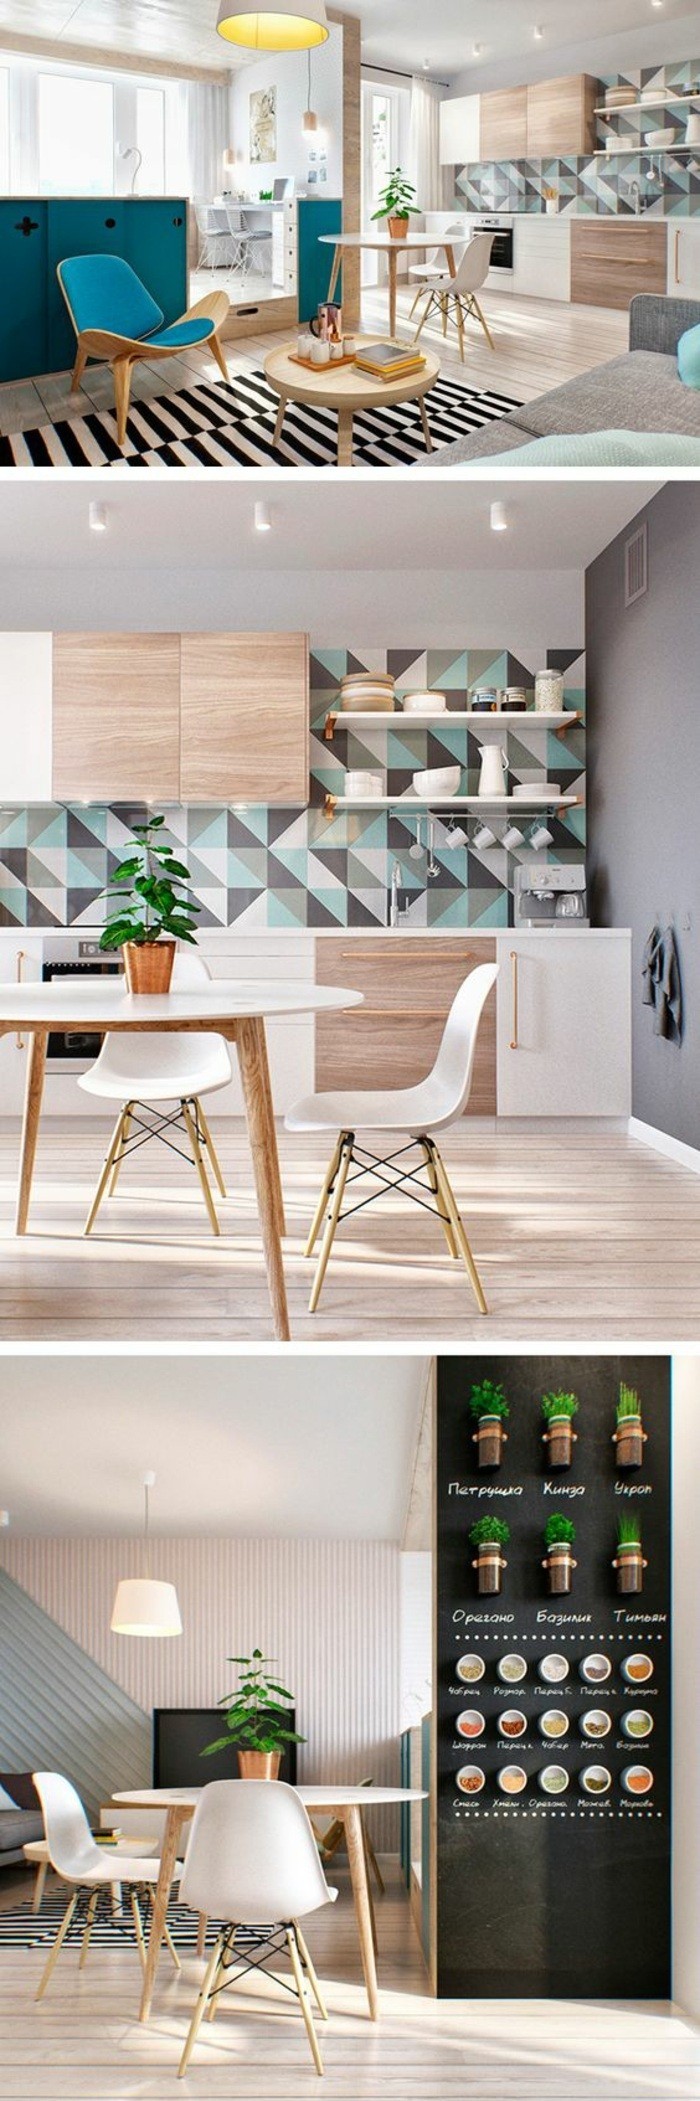 10-kuhinja-uređenje stol-stolica-wanddeko tepih i biljka lampa-biljka-crno-zid